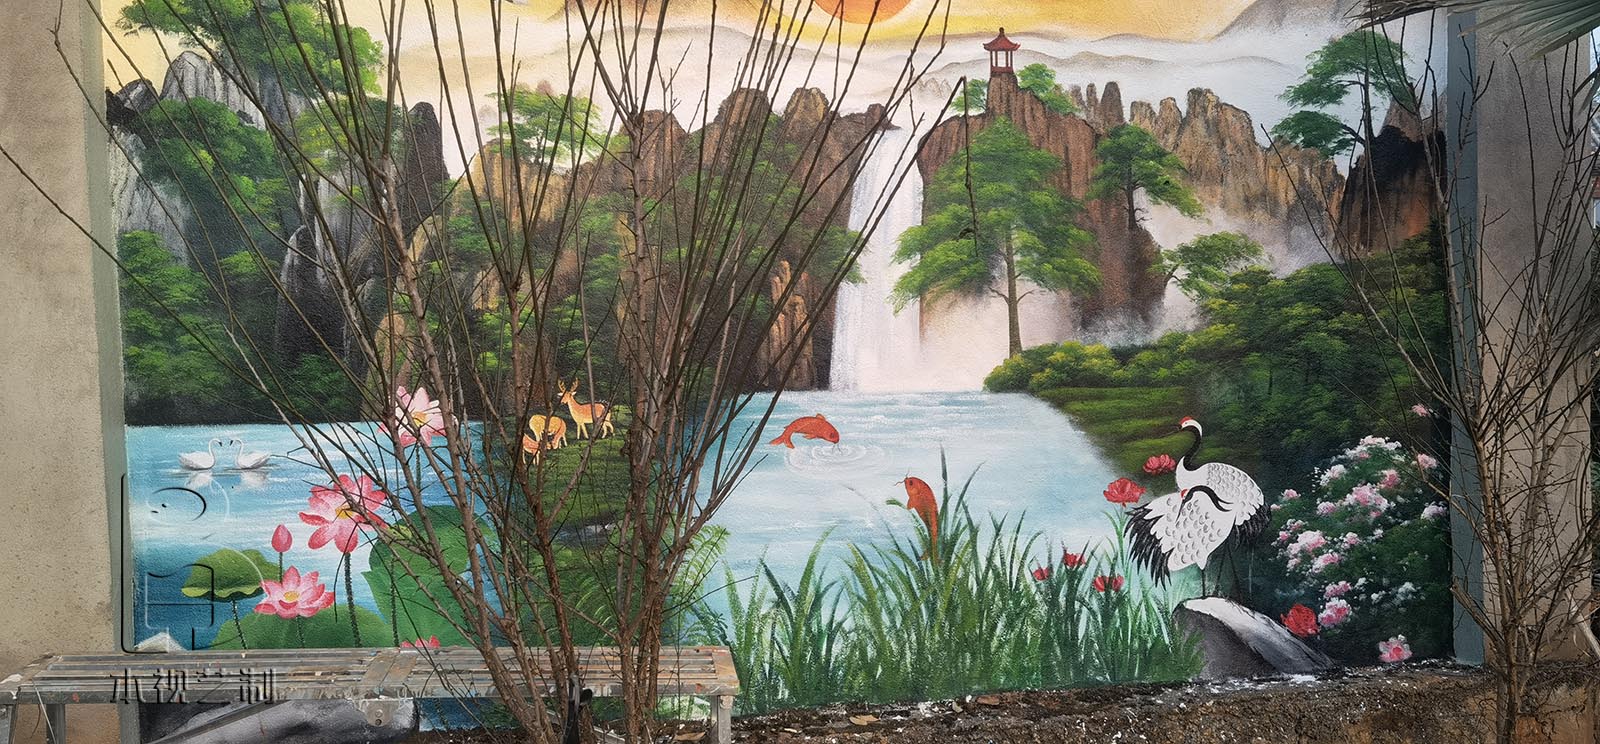 外墙彩绘山水国画风景壁画